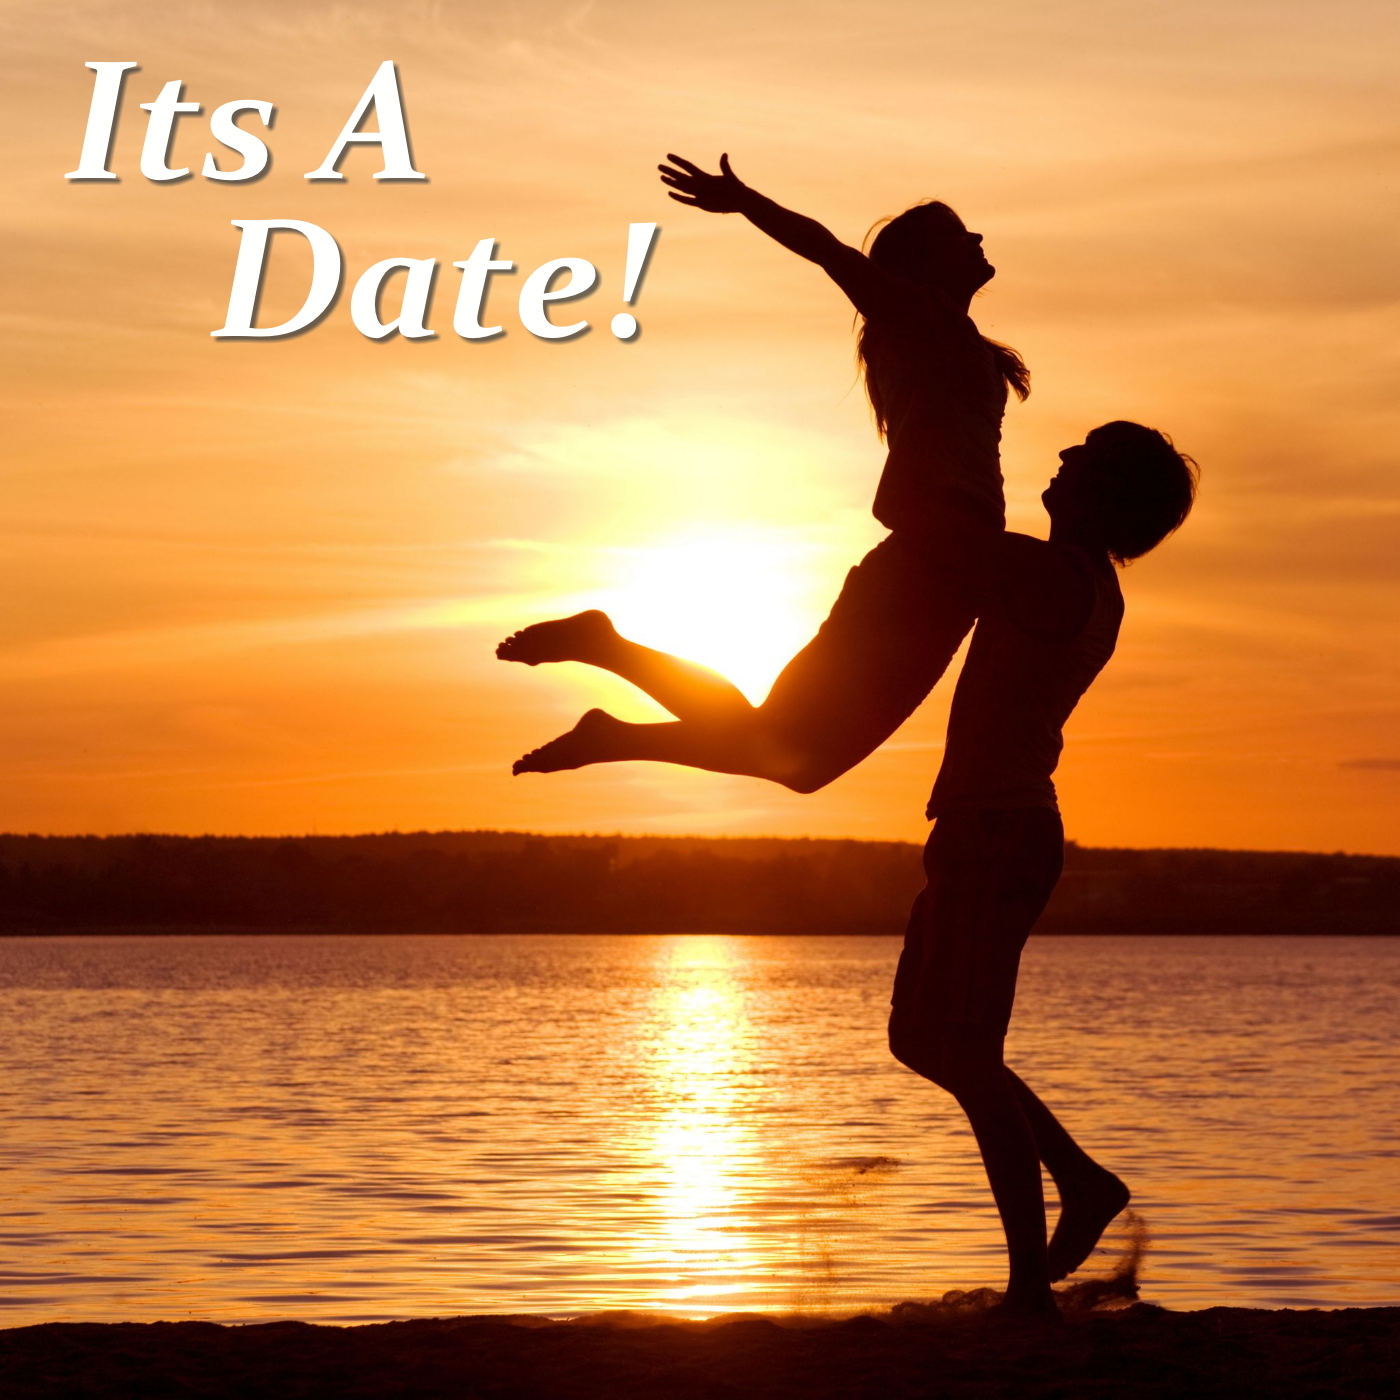 Its A Date!